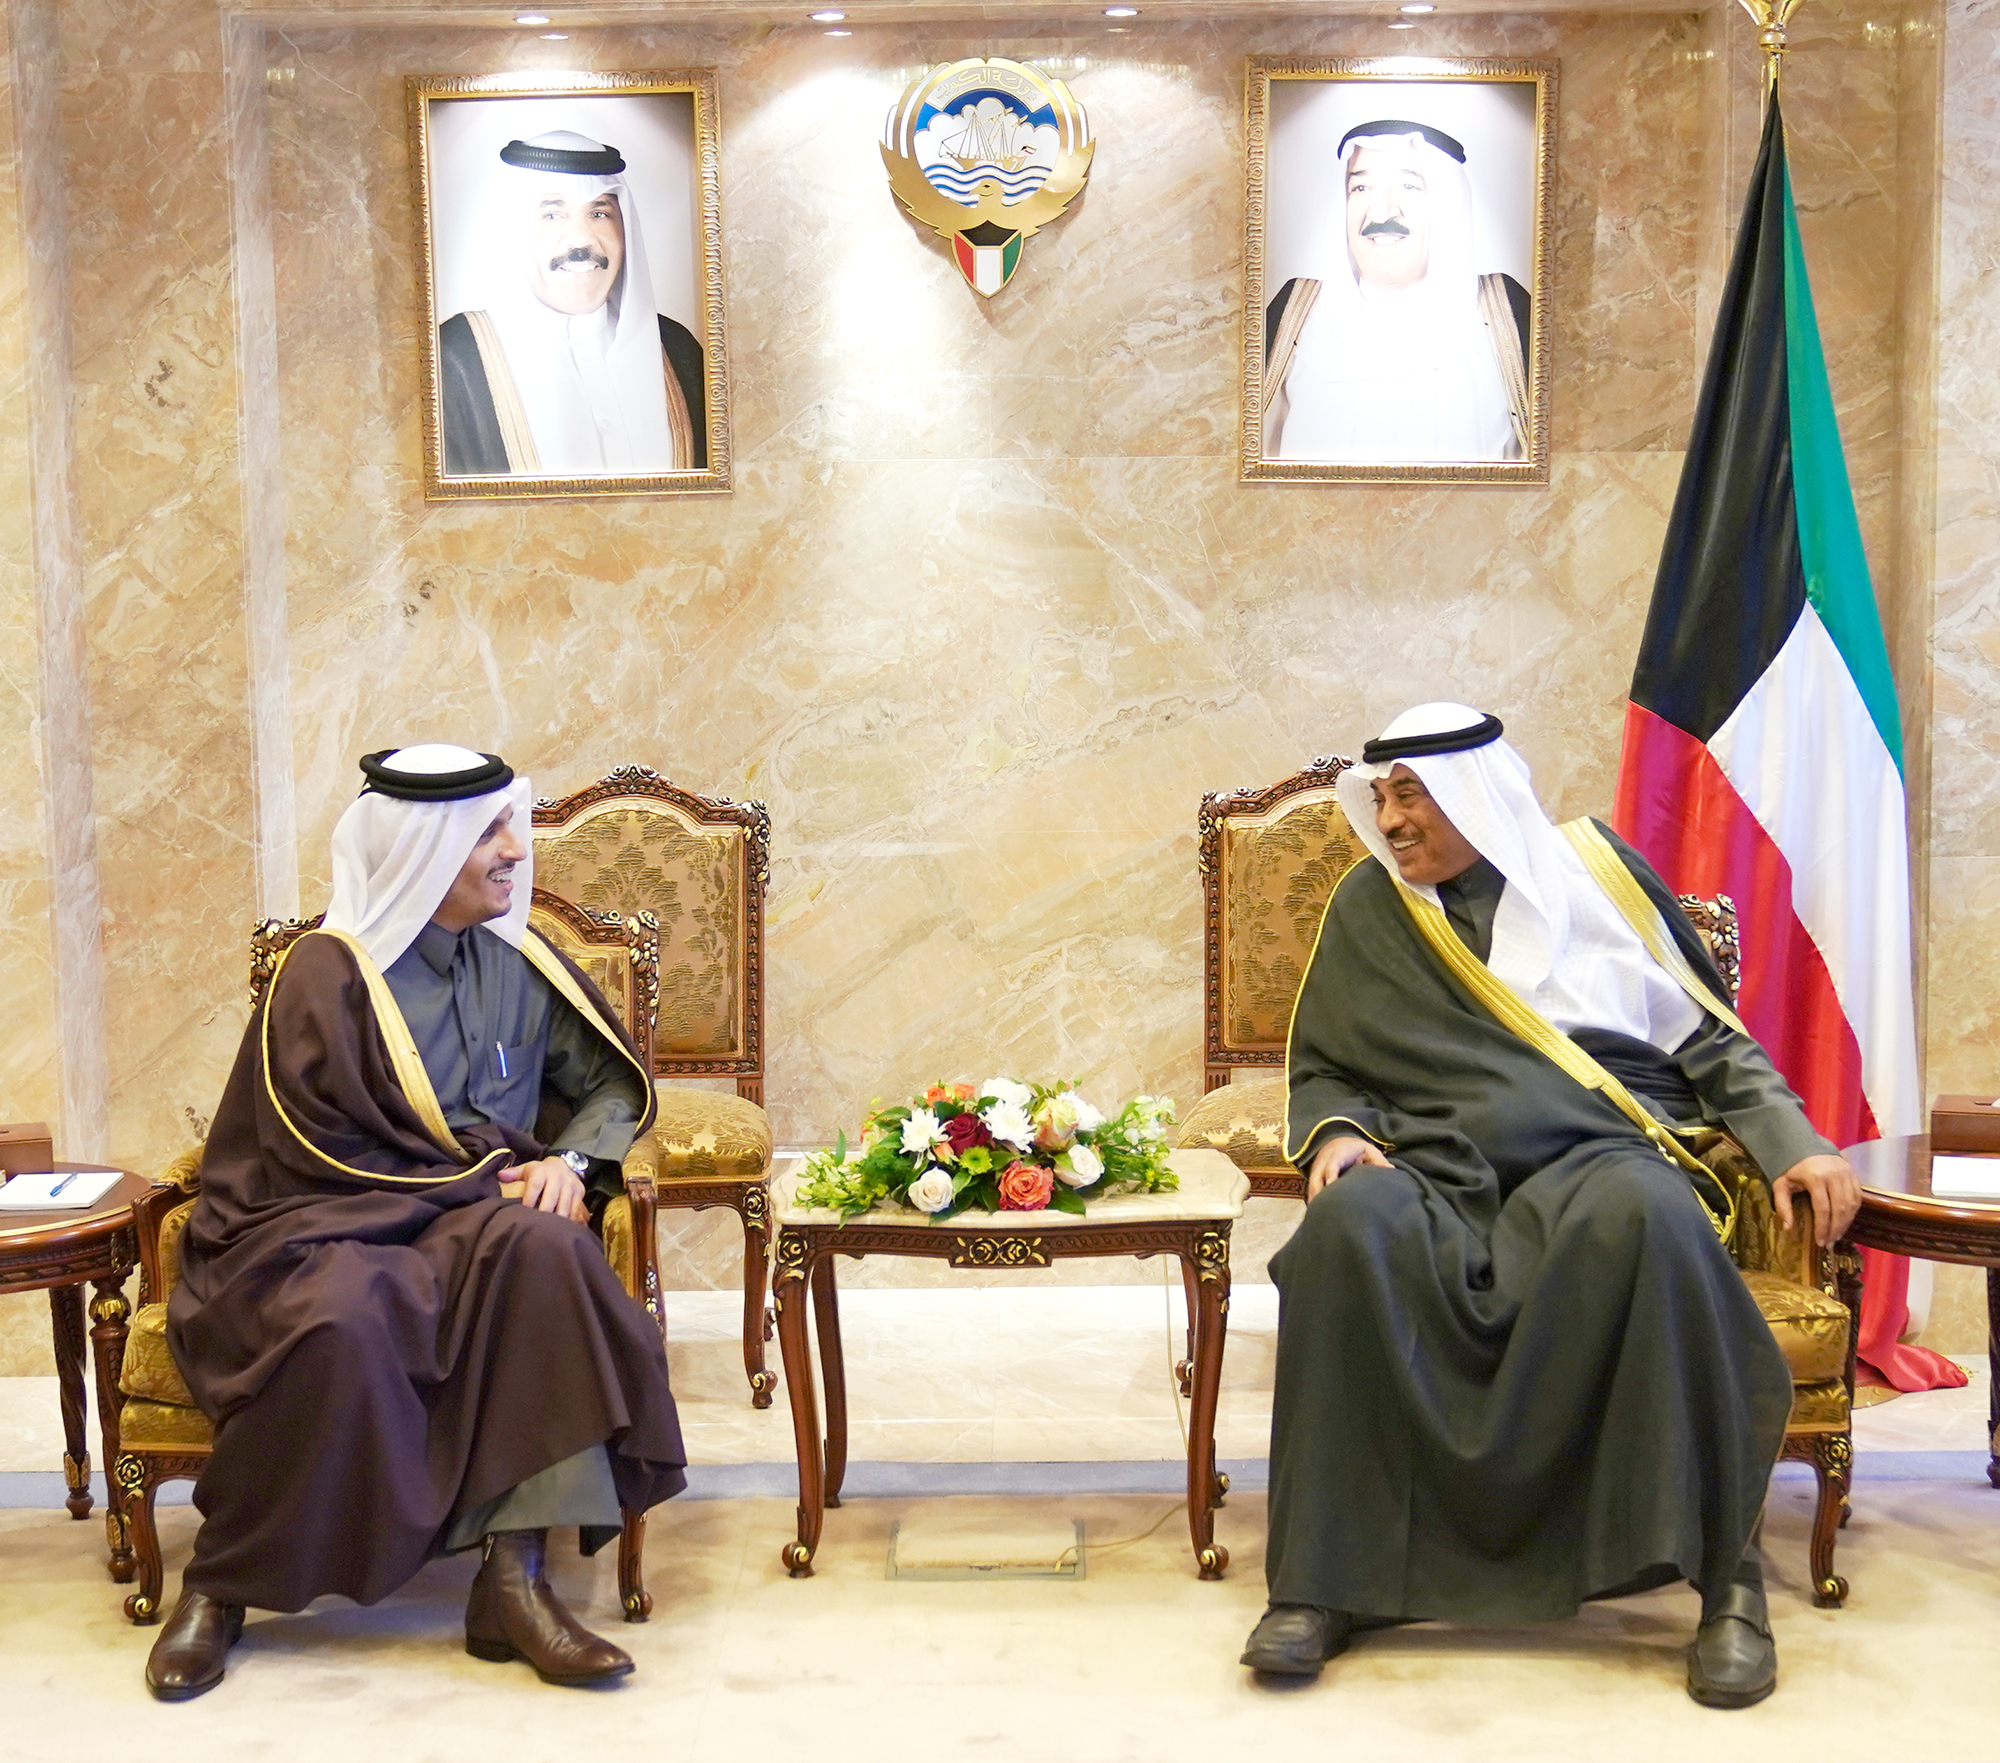 سمو رئيس مجلس الوزراء يستقبل وزير الخارجية في دولة قطر